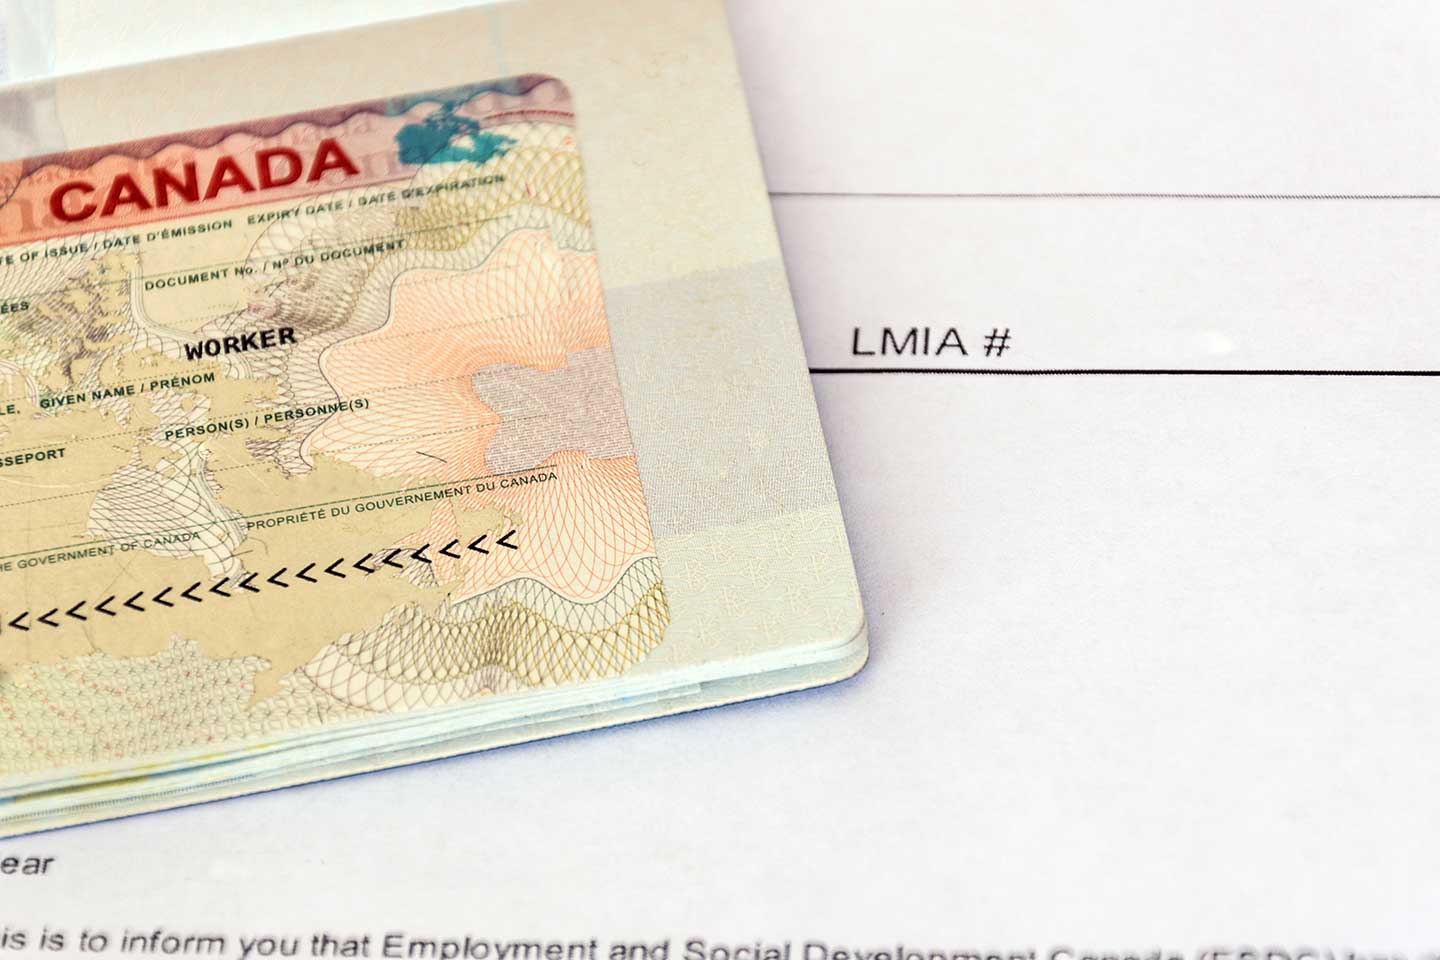 Obligations fiscales des entreprises non-résidentes qui envoient des employés au Canada : Certification de l'employeur non-résident